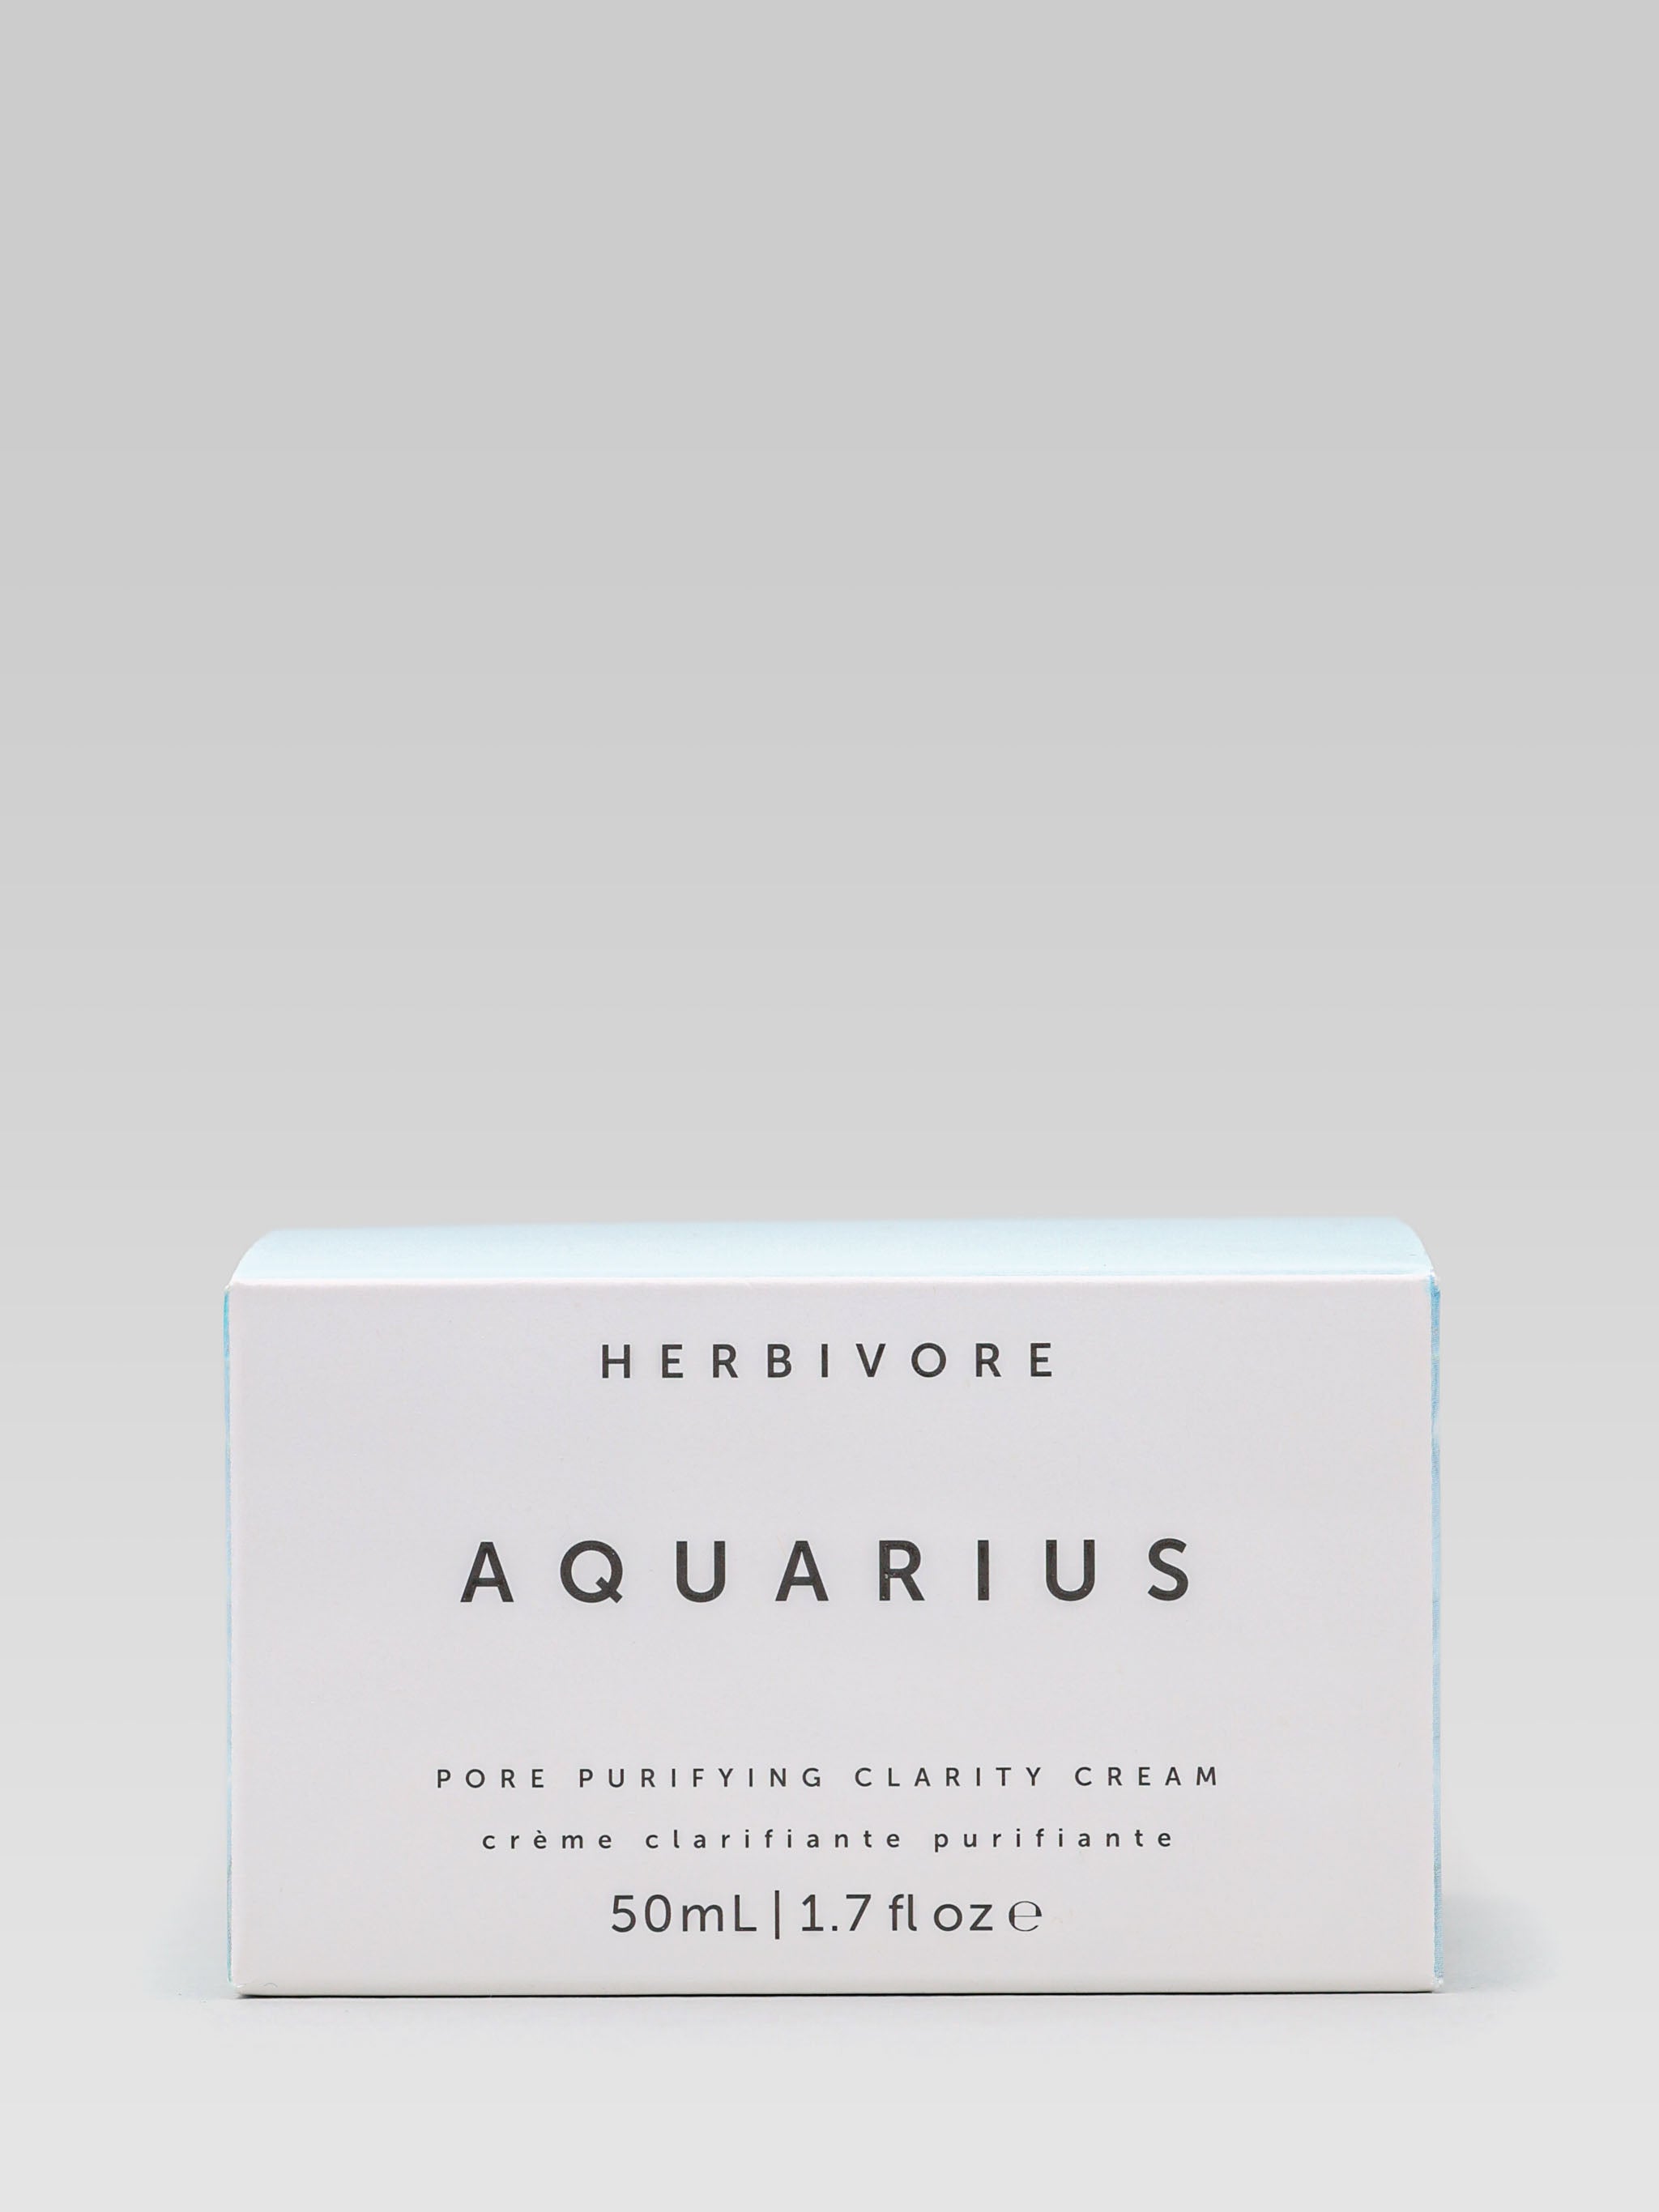 HERBIVORE BOTANICALS Aquarius Pore Purifying Clarity Cream Packaging